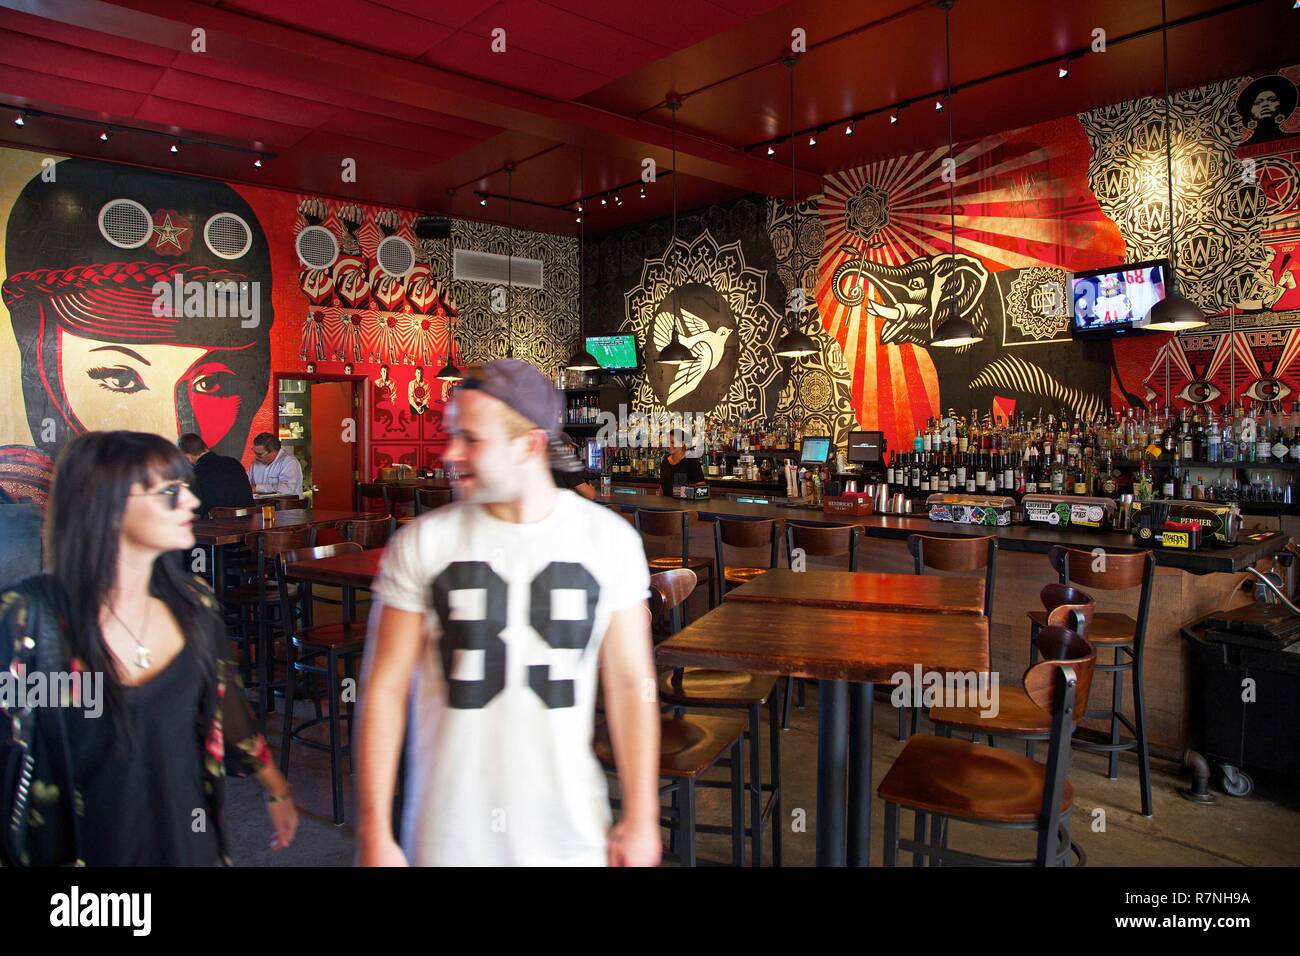 États-unis, Floride, Miami, Wynwood Restaurant Cuisine et bar, décoré avec des illustrations obéir par Shepard Fairey, près de murs Wynwood, dans le district de Wynwood Banque D'Images